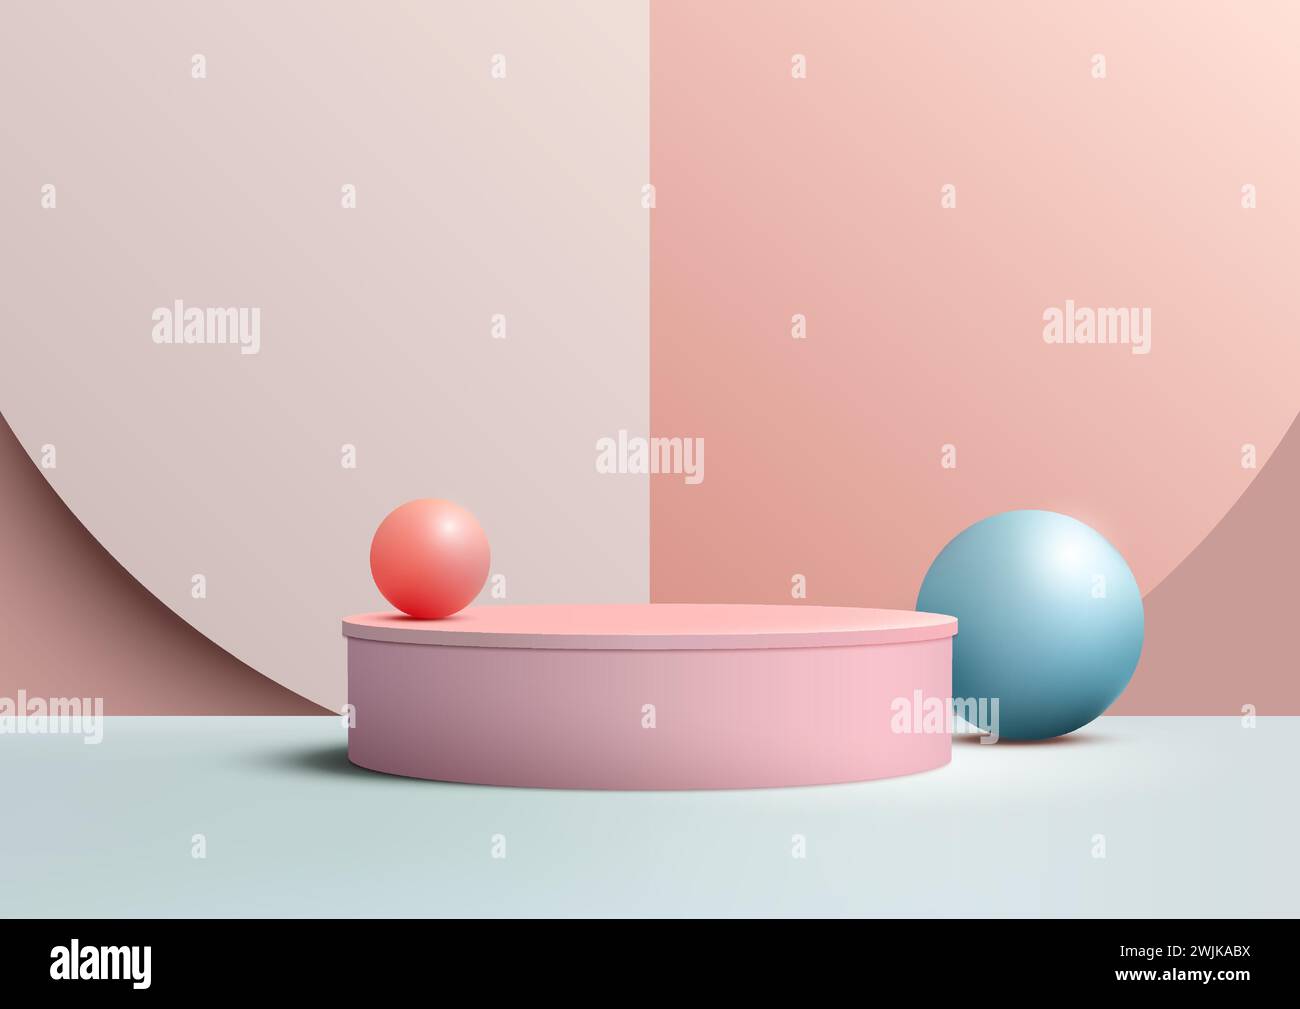 Présentation des produits fond abstrait avec une scène de podium 3D minimale ornée de boules pastel multicolores bleues et roses dans des formes géométriques. Illustration de Vecteur